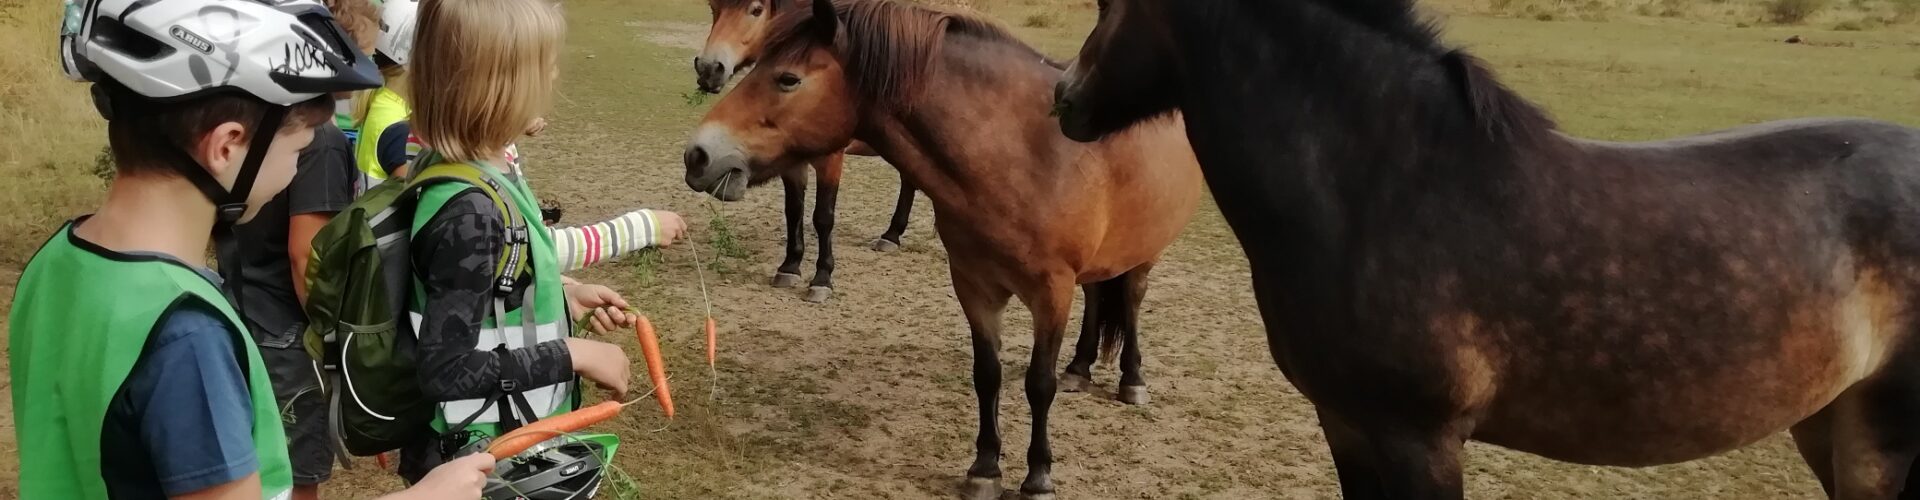 3 Exmoore-Ponys (Wildpferde) werden von den Jungen Naturwächtern mit frische Möhren gefüttert